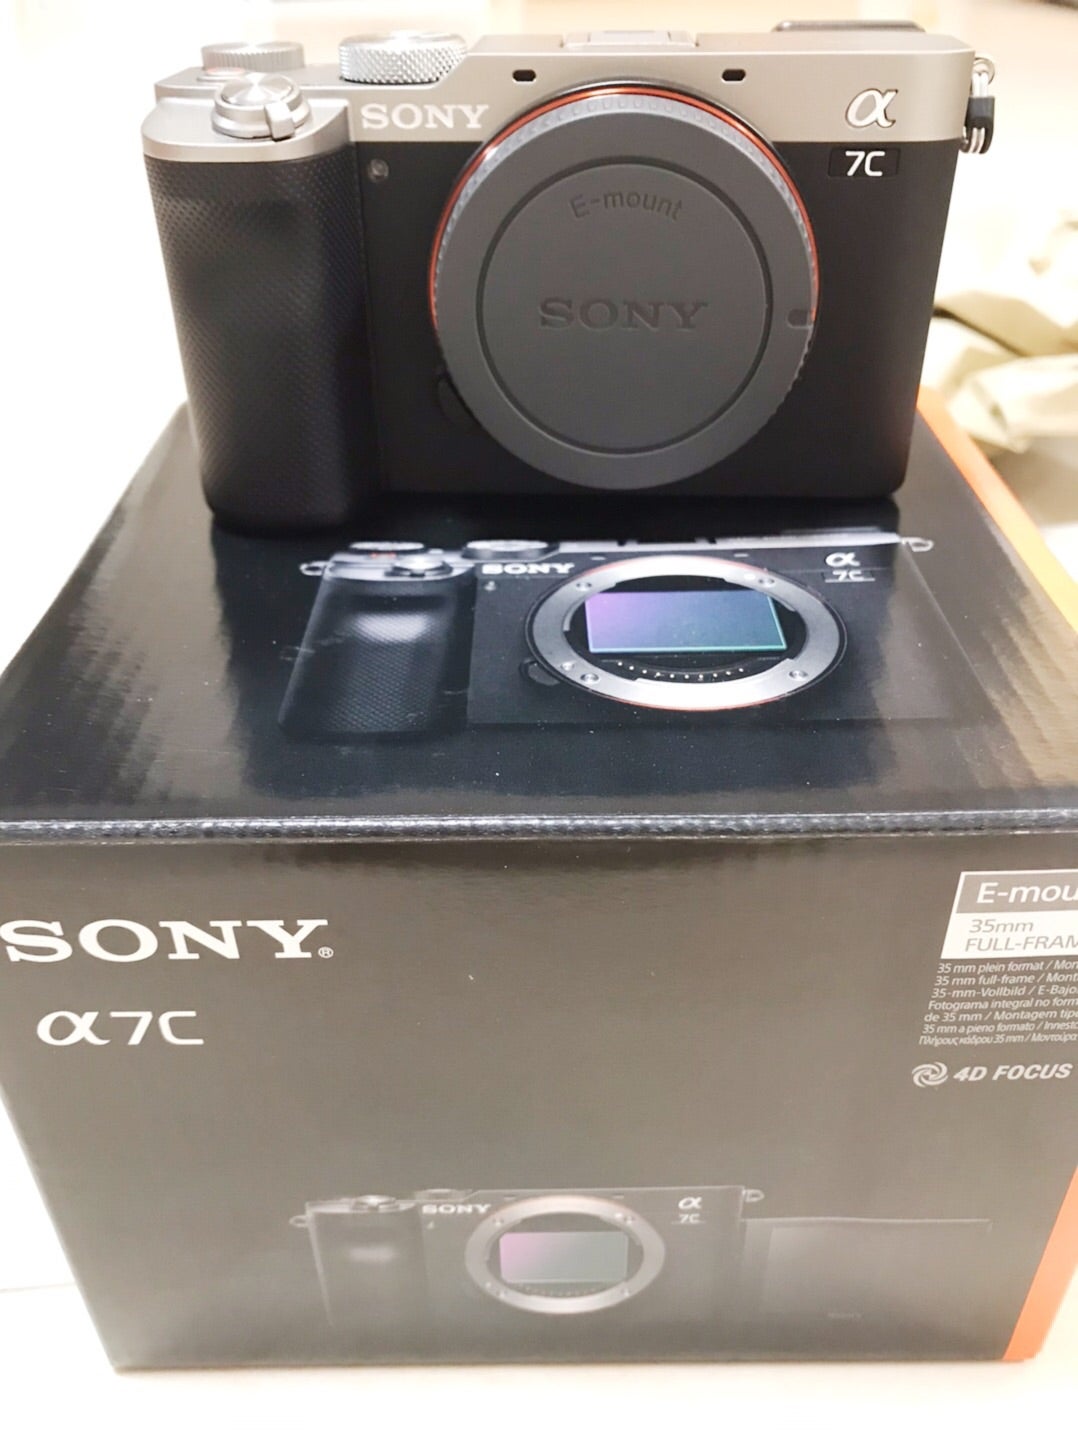 新カメラ SONY α7cが来ました〜！ | テンパりワーママの育児ときどきフォトライフ日記